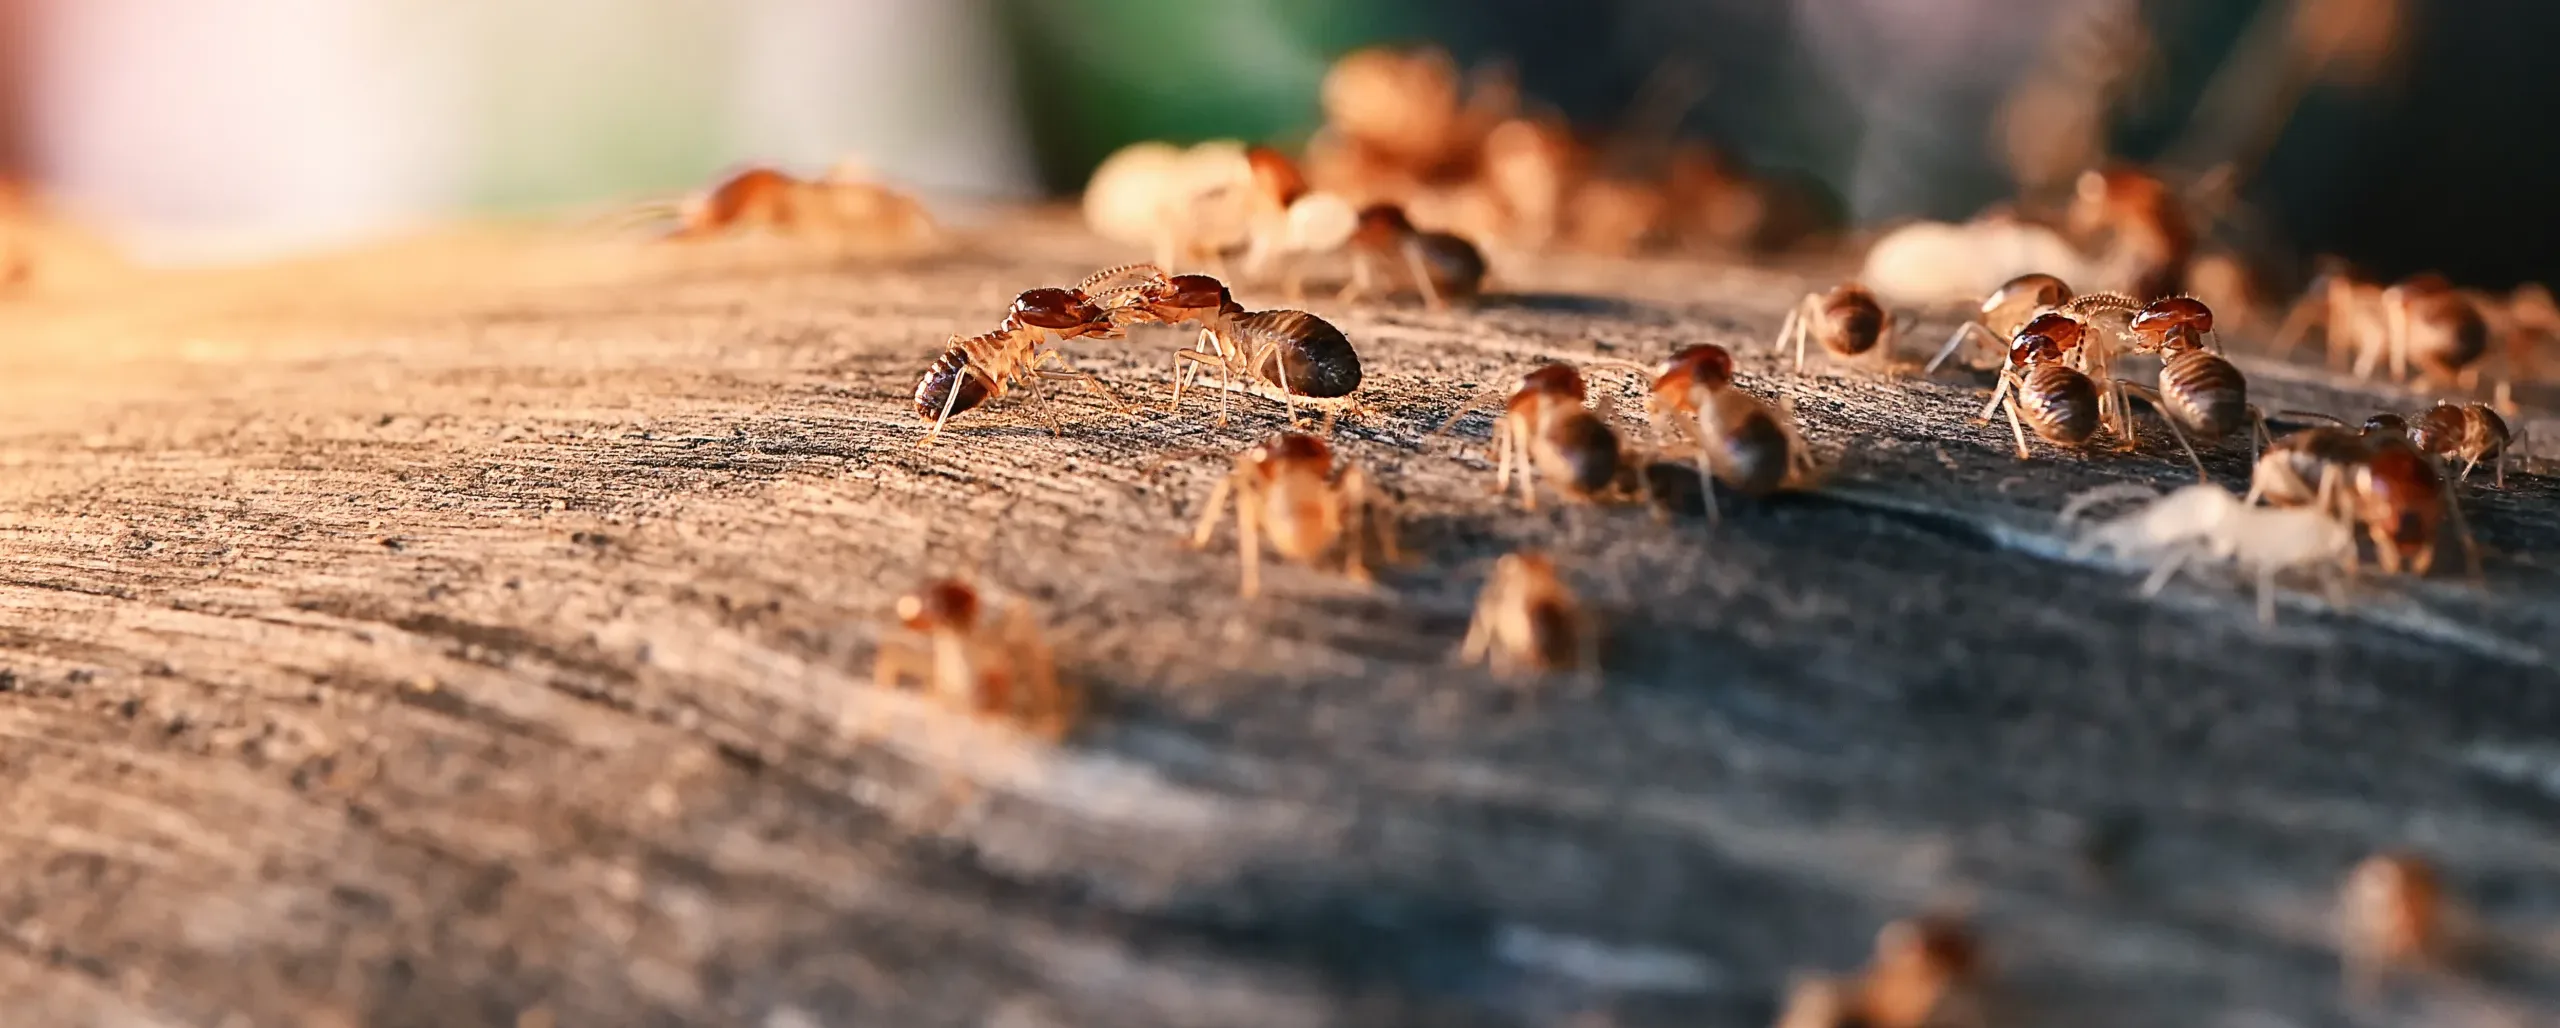 Termitas arrastrándose sobre un trozo de madera en una casa